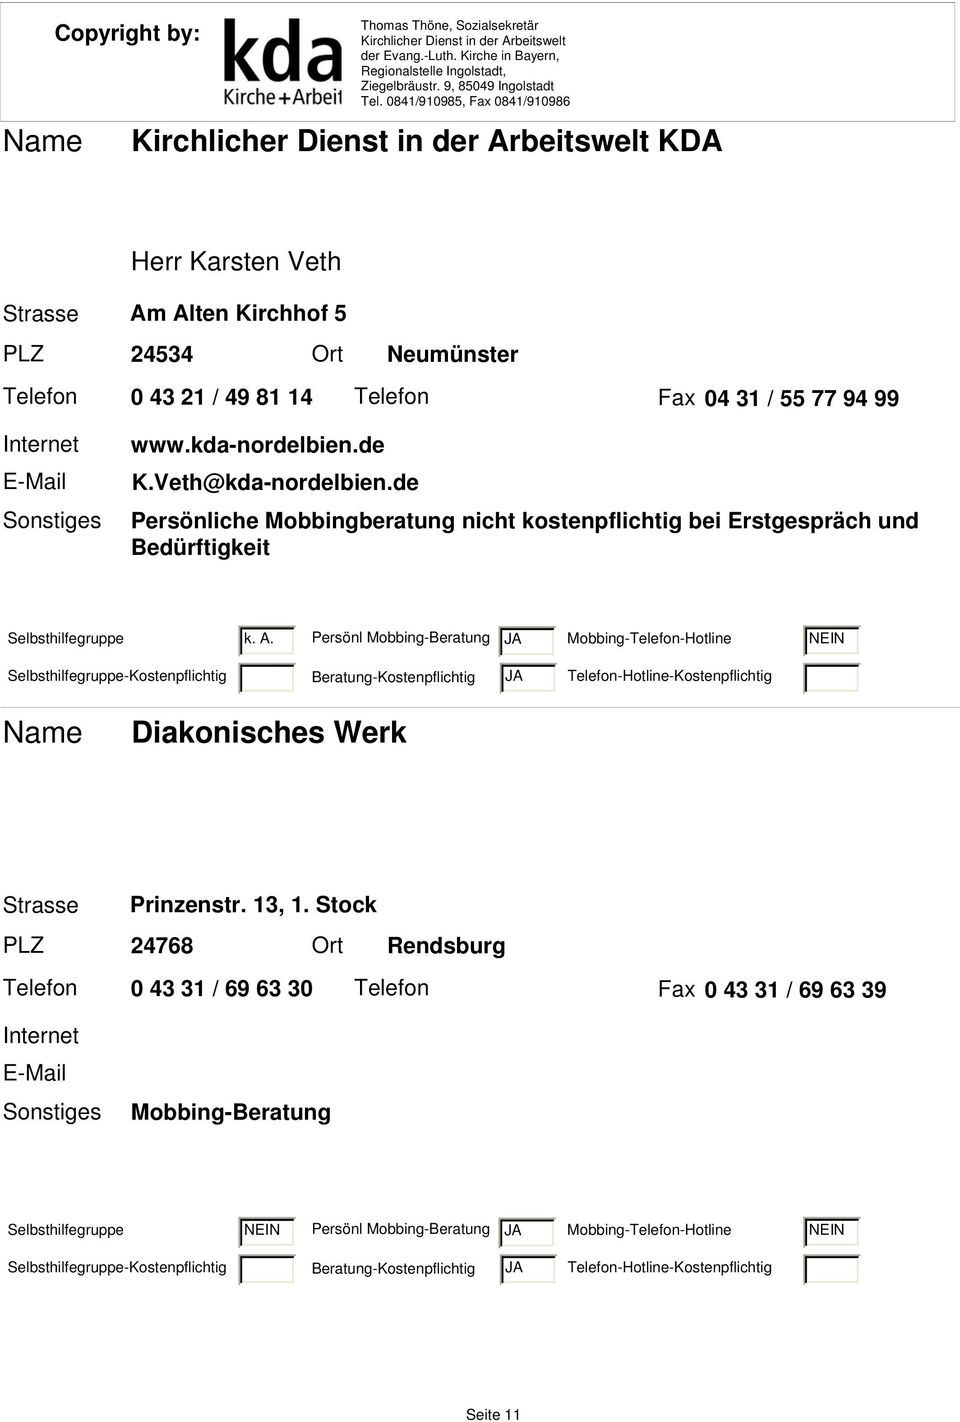 Persönl Mobbing-Beratung JA Mobbing-Telefon-Hotline NEIN Selbsthilfegruppe-Kostenpflichtig Beratung-Kostenpflichtig JA Diakonisches Werk Strasse Prinzenstr. 13, 1.